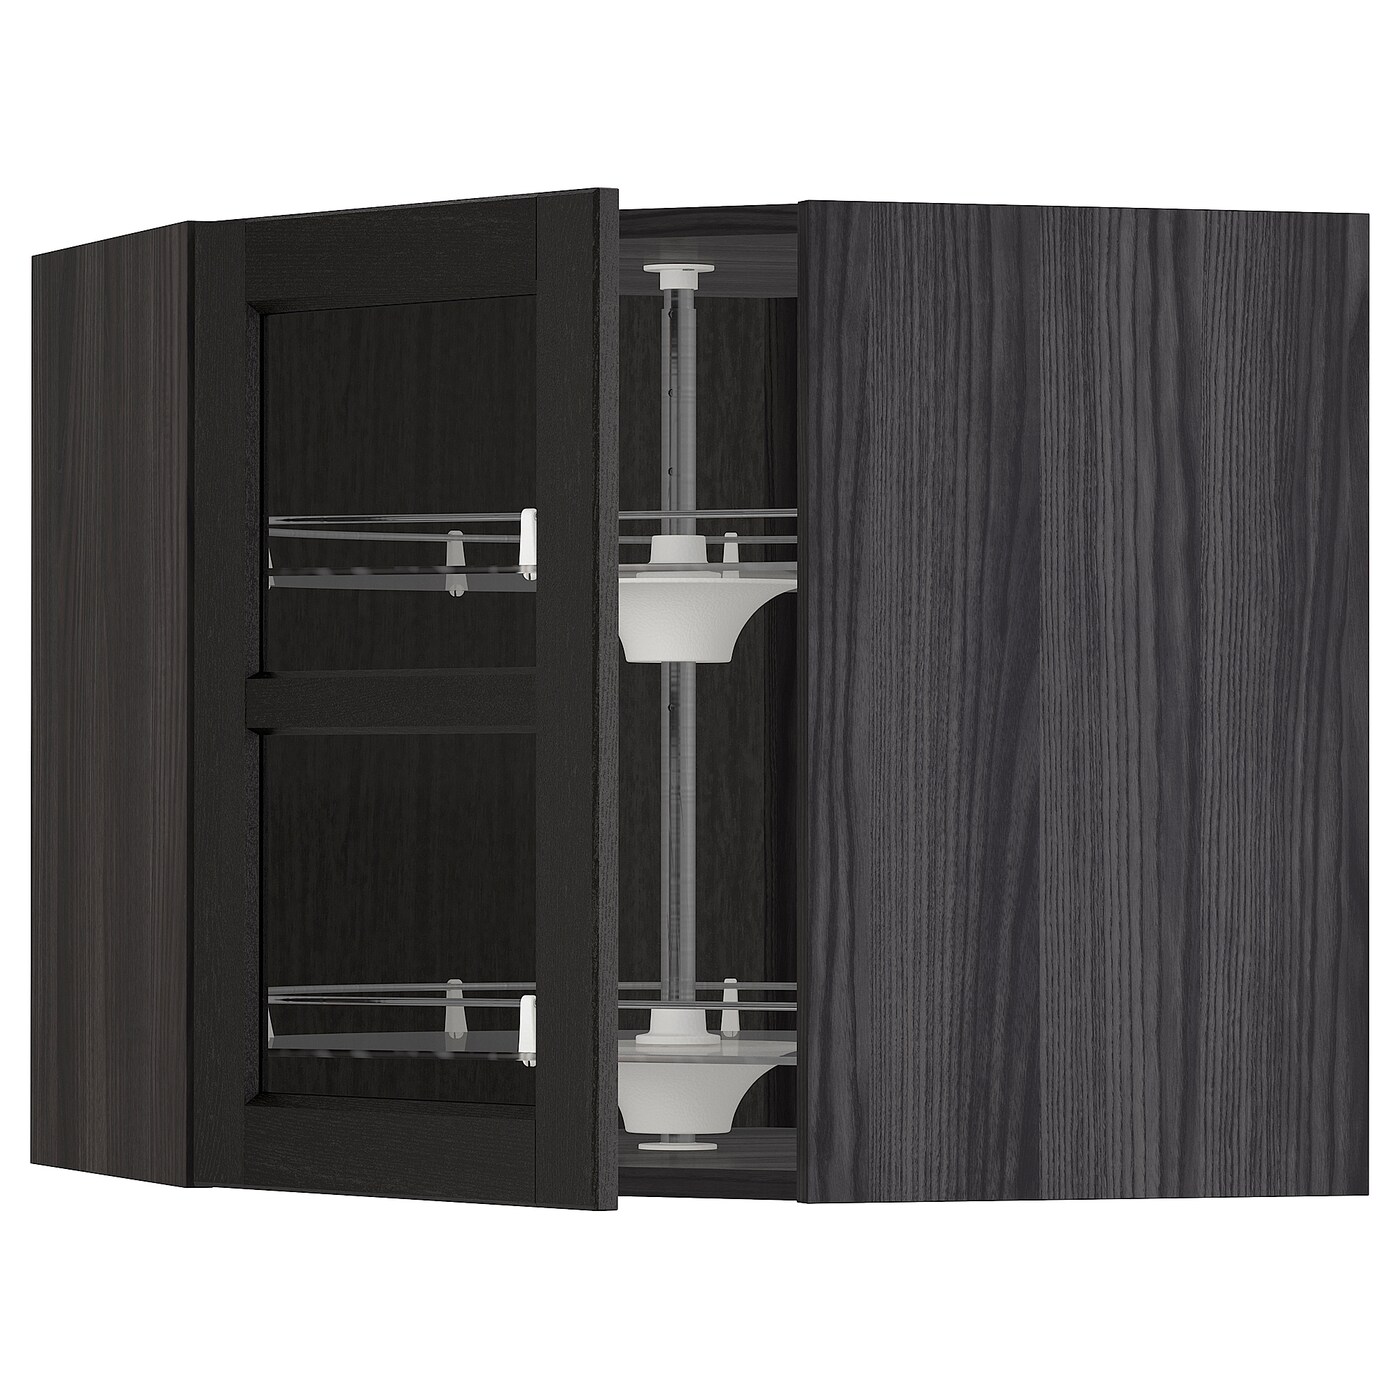 Навесной шкаф - IKEA METOD, 67.5х67.5х60 см, черный/стекло, МЕТОД ИКЕА